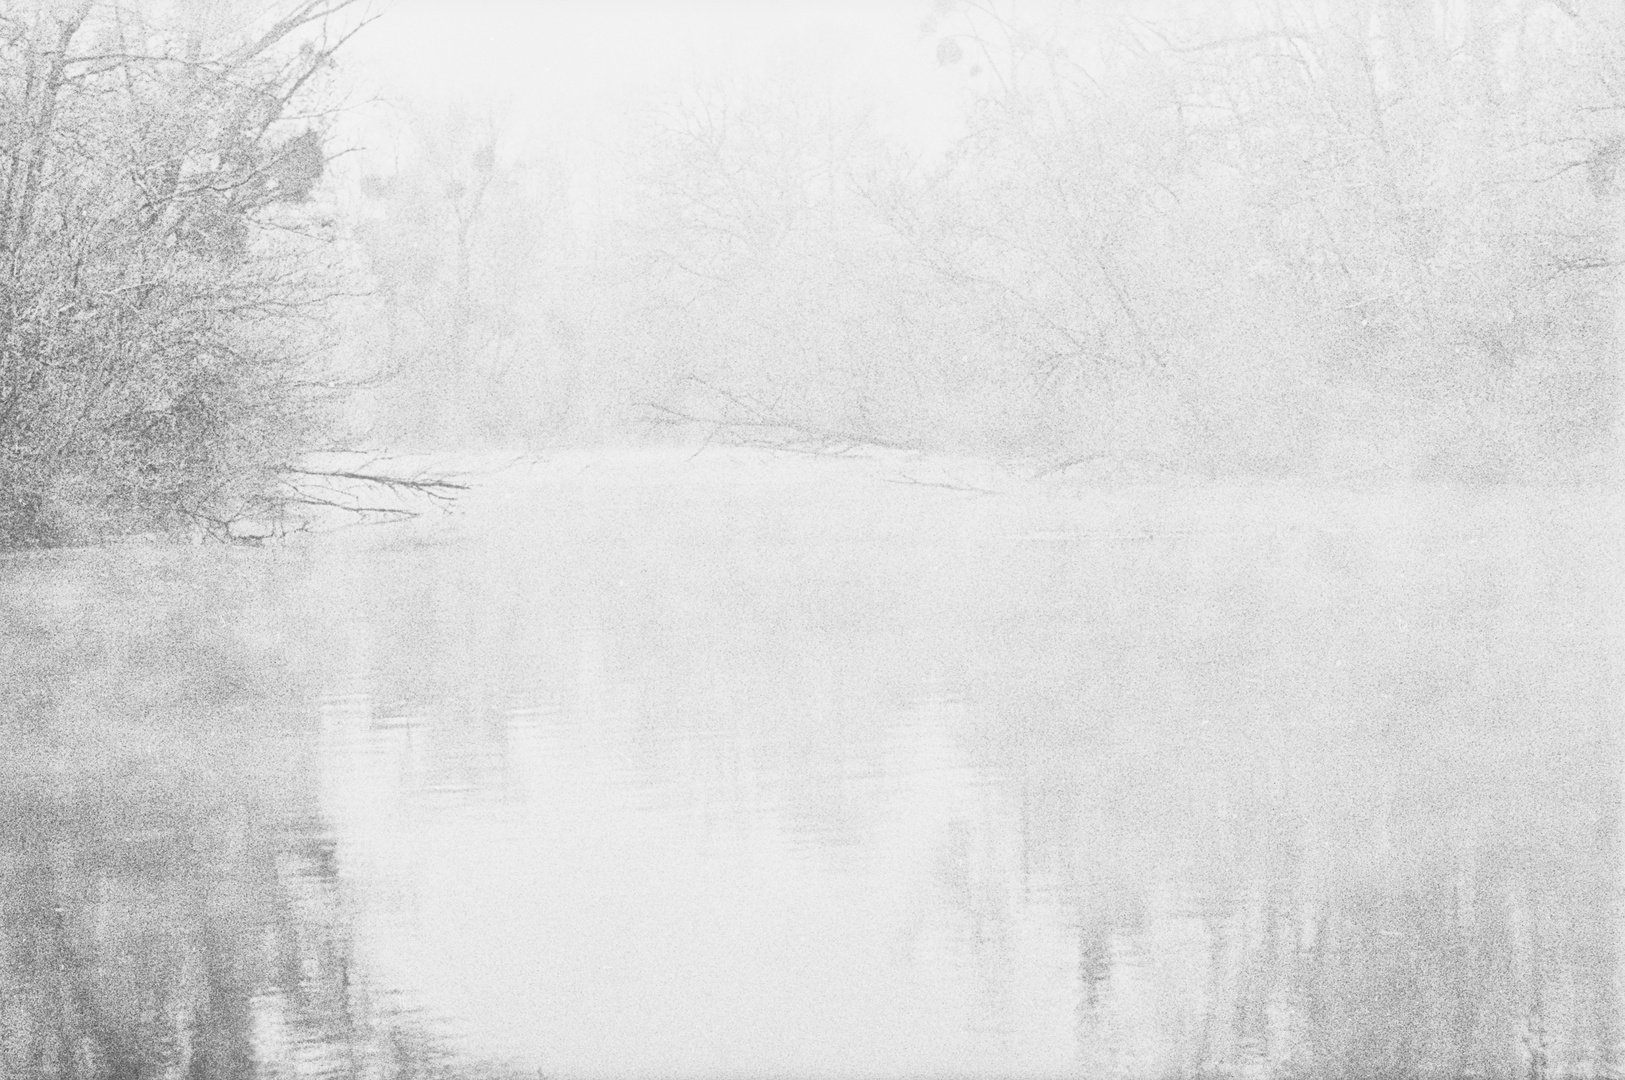 Frost und Nebel am Groschenwasser III